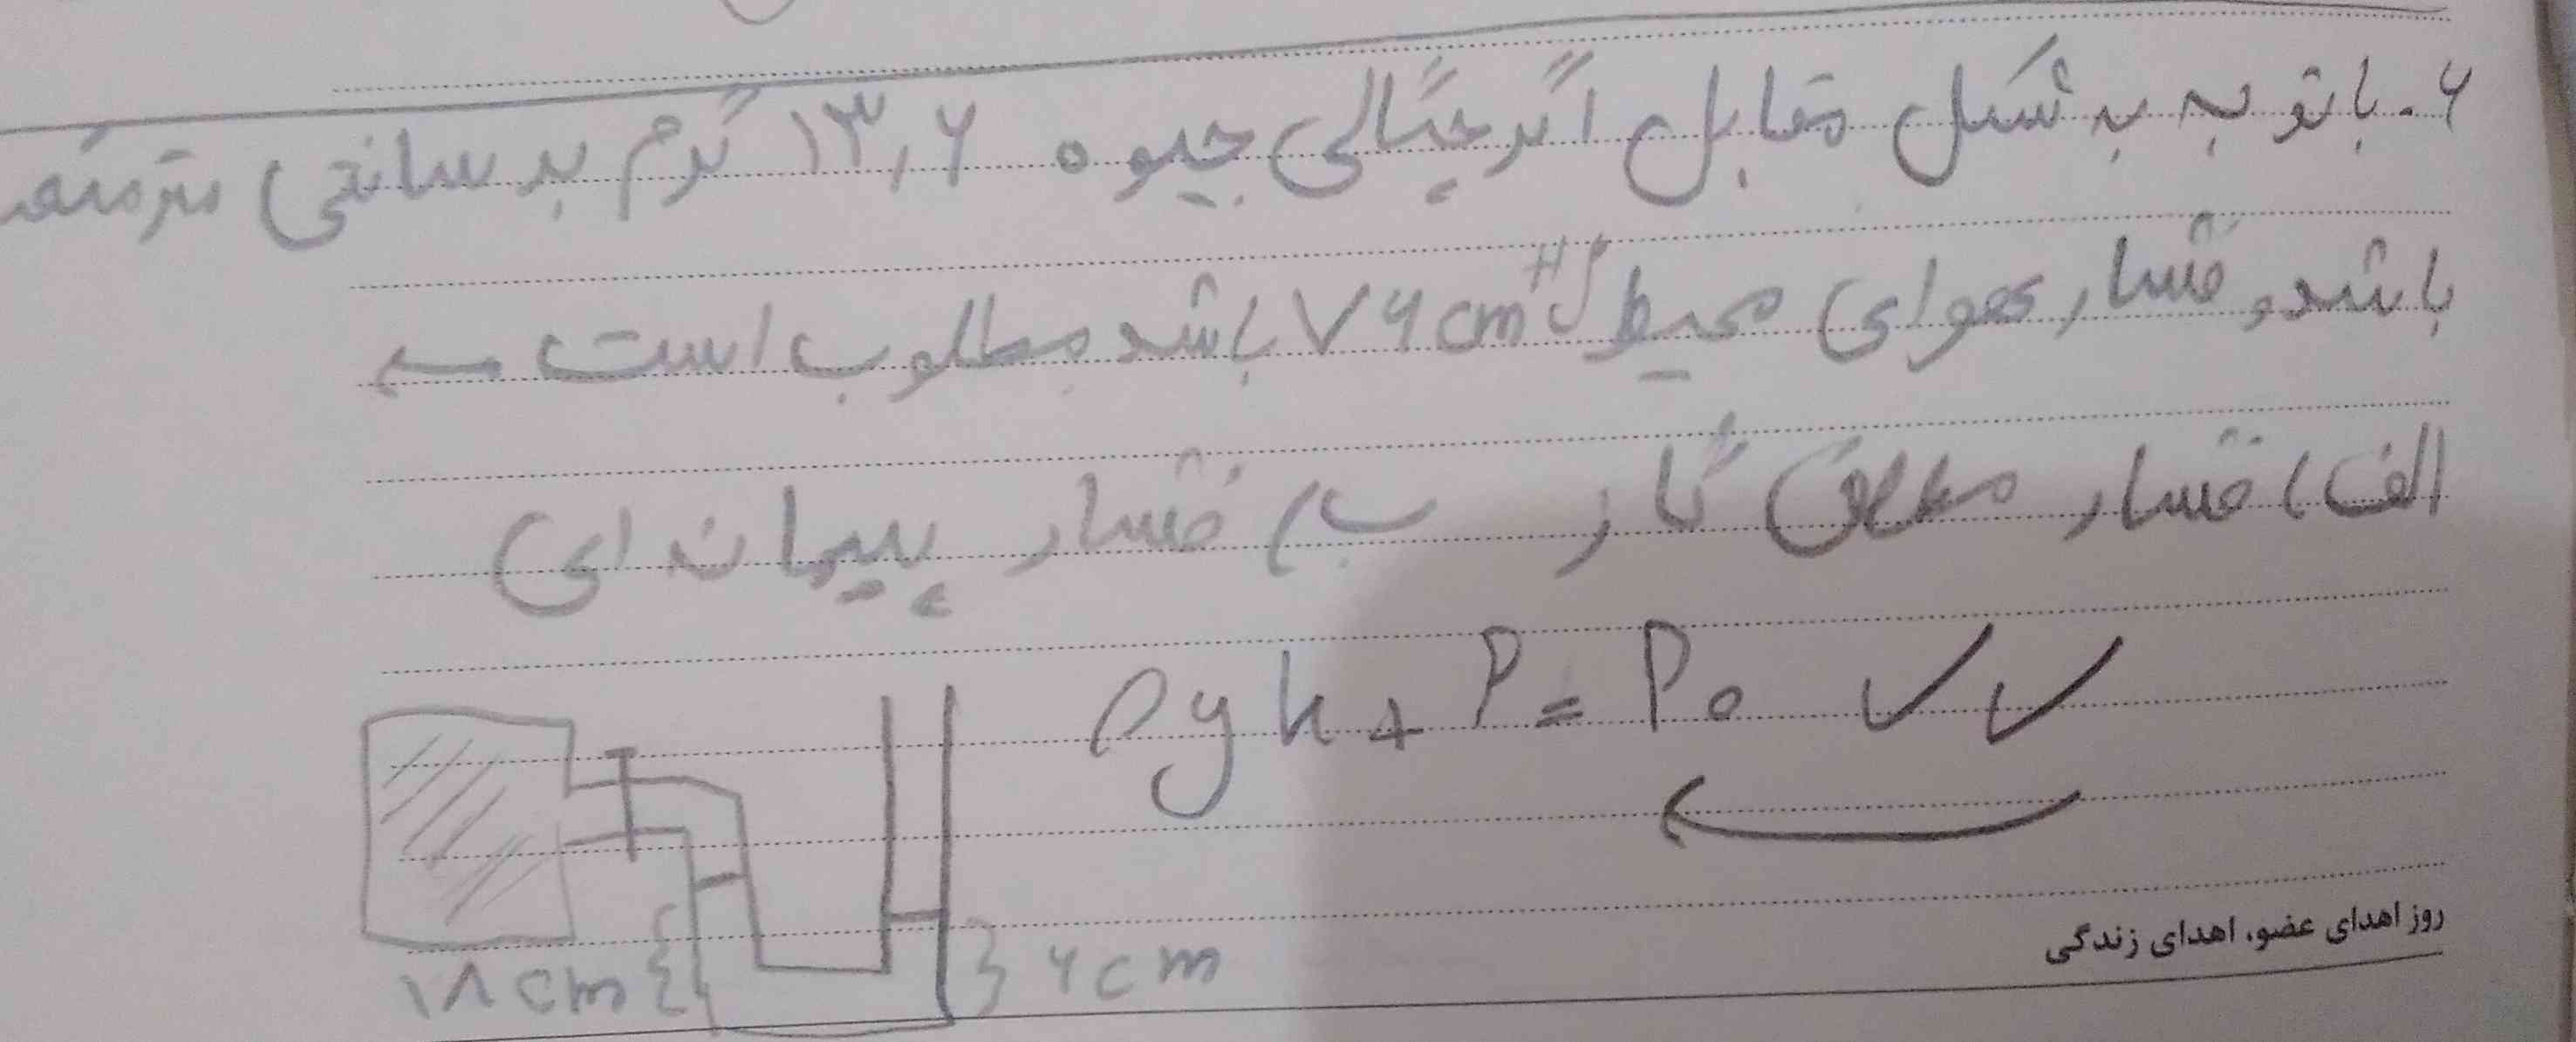 میشه یکی توضیح بده چرا از این فرمول برای حل این سوال استفاده میکنیم؟!؟!؟